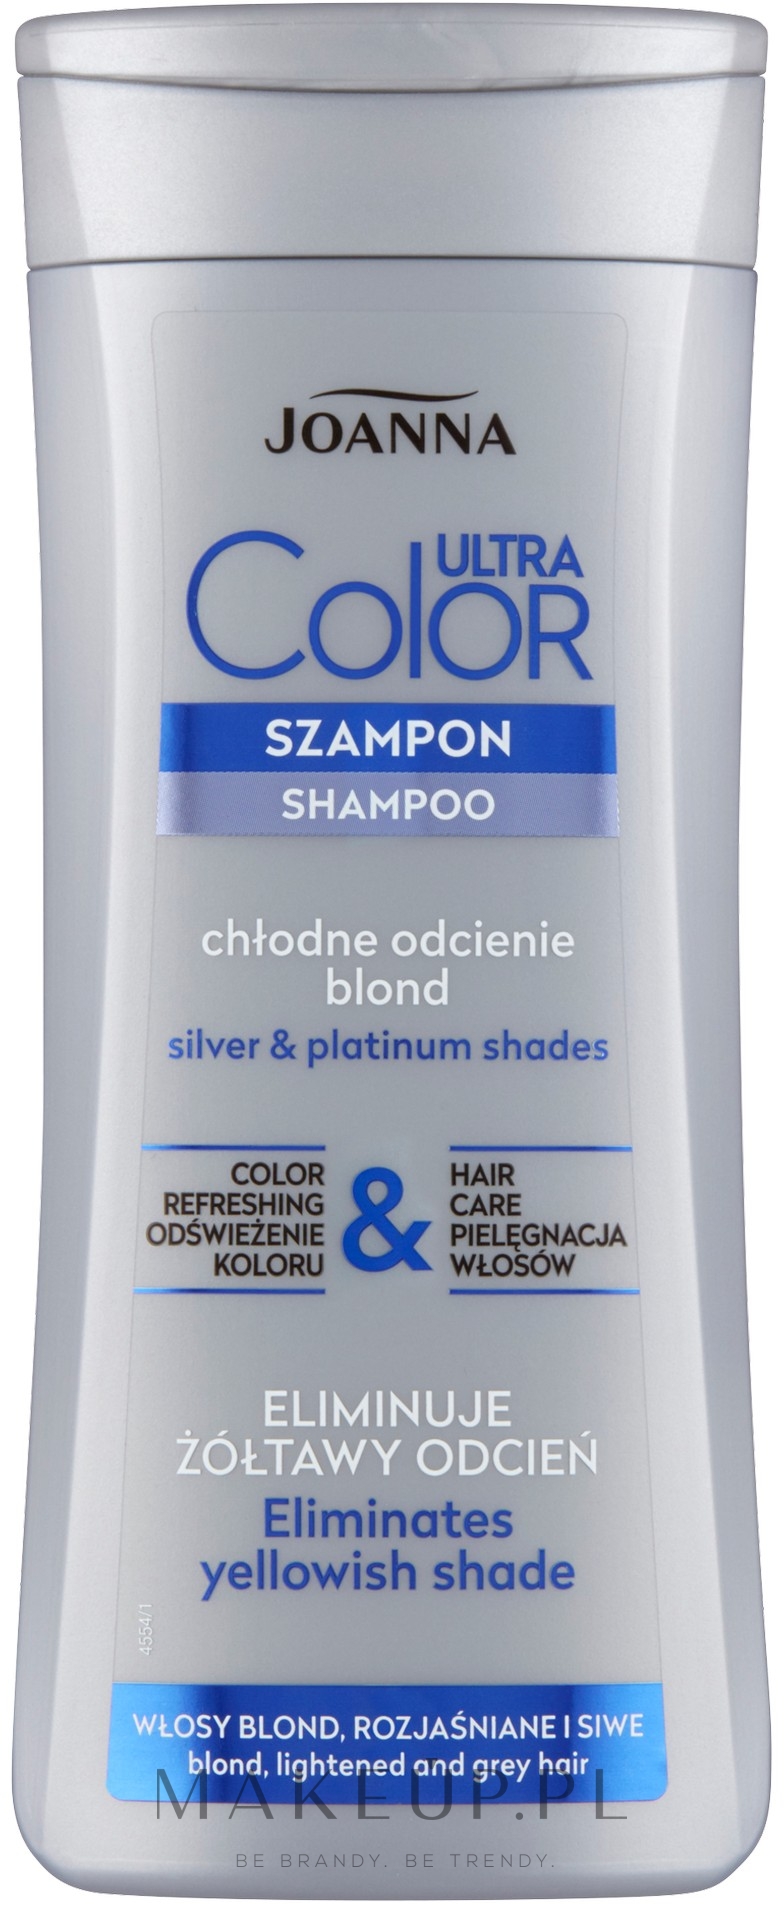 szampon do włosów siwych joanna